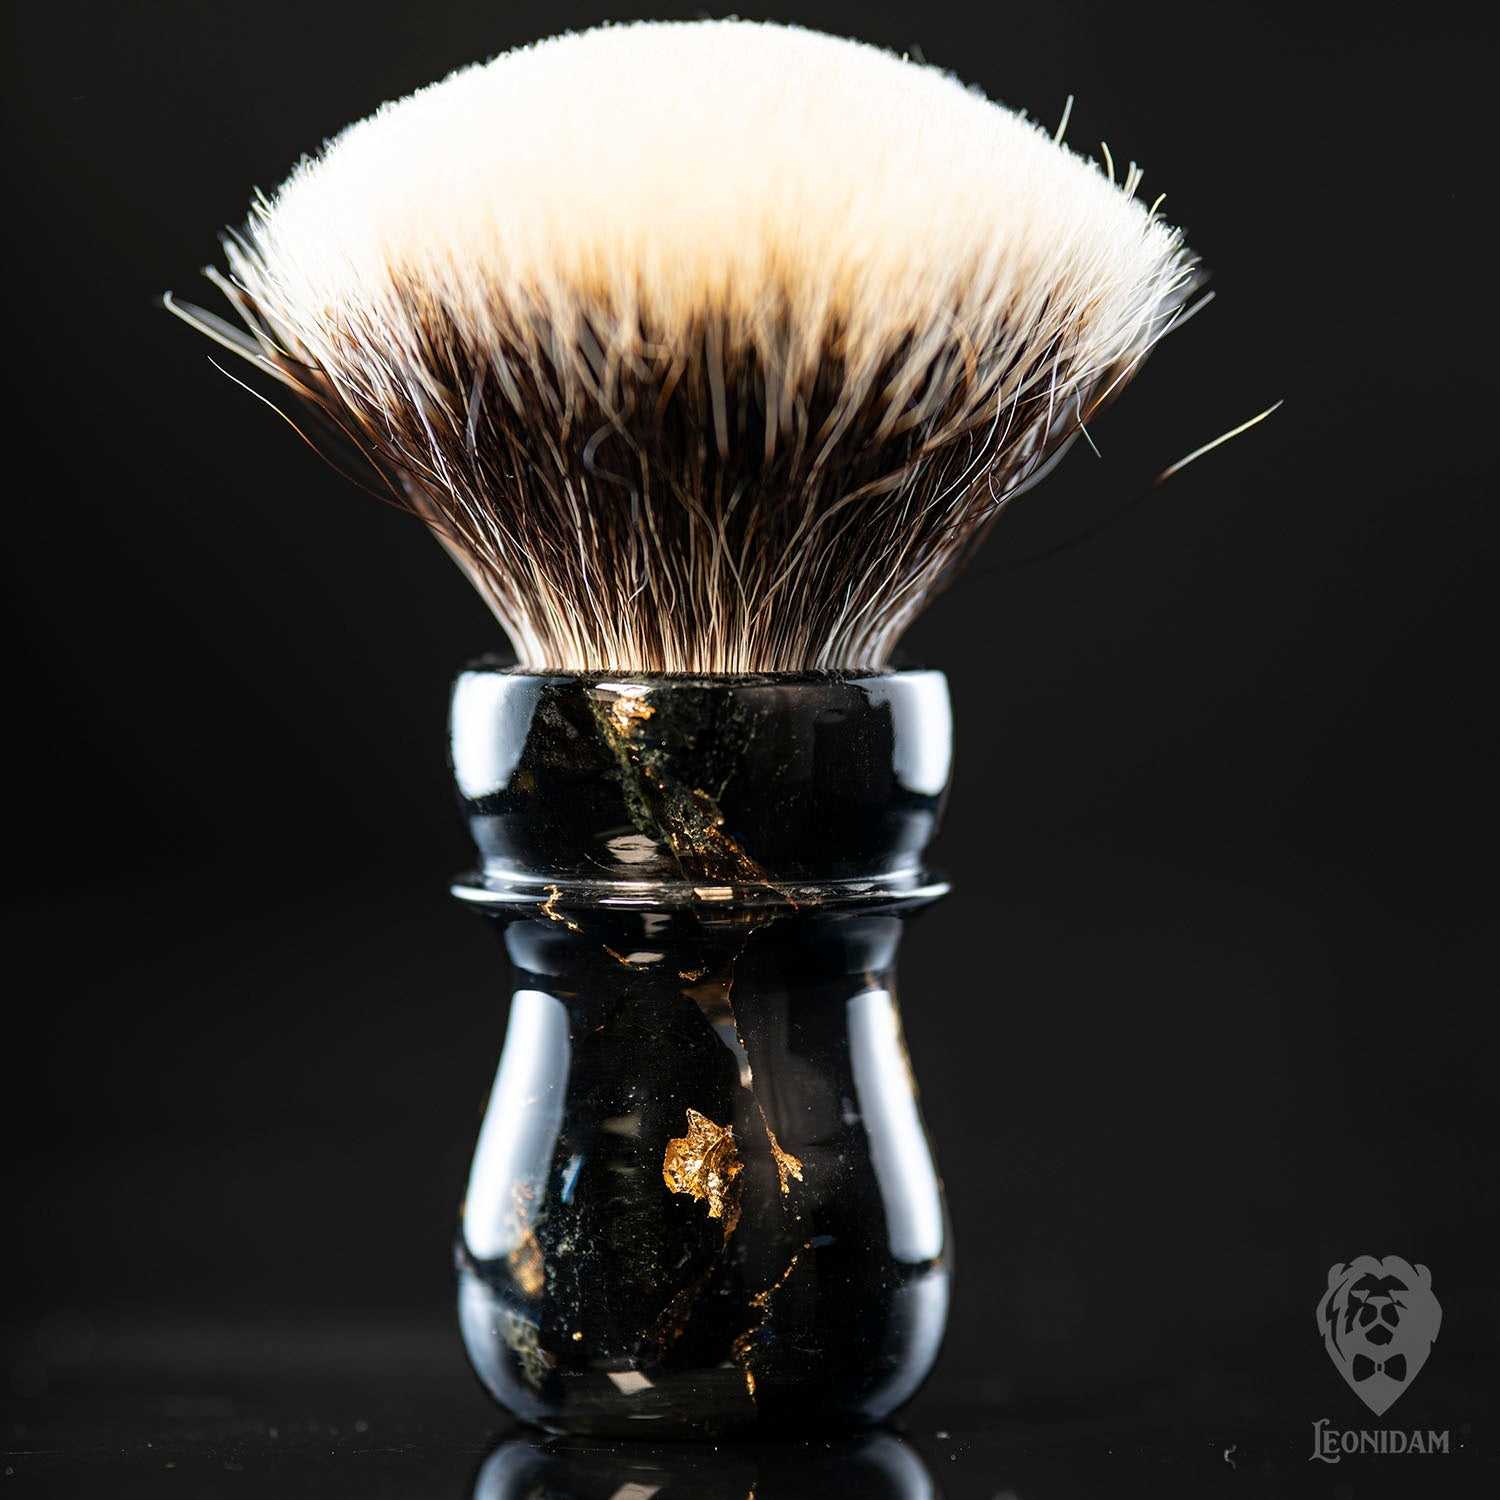 Handmade Shaving Brush "Loki" 26/28mm